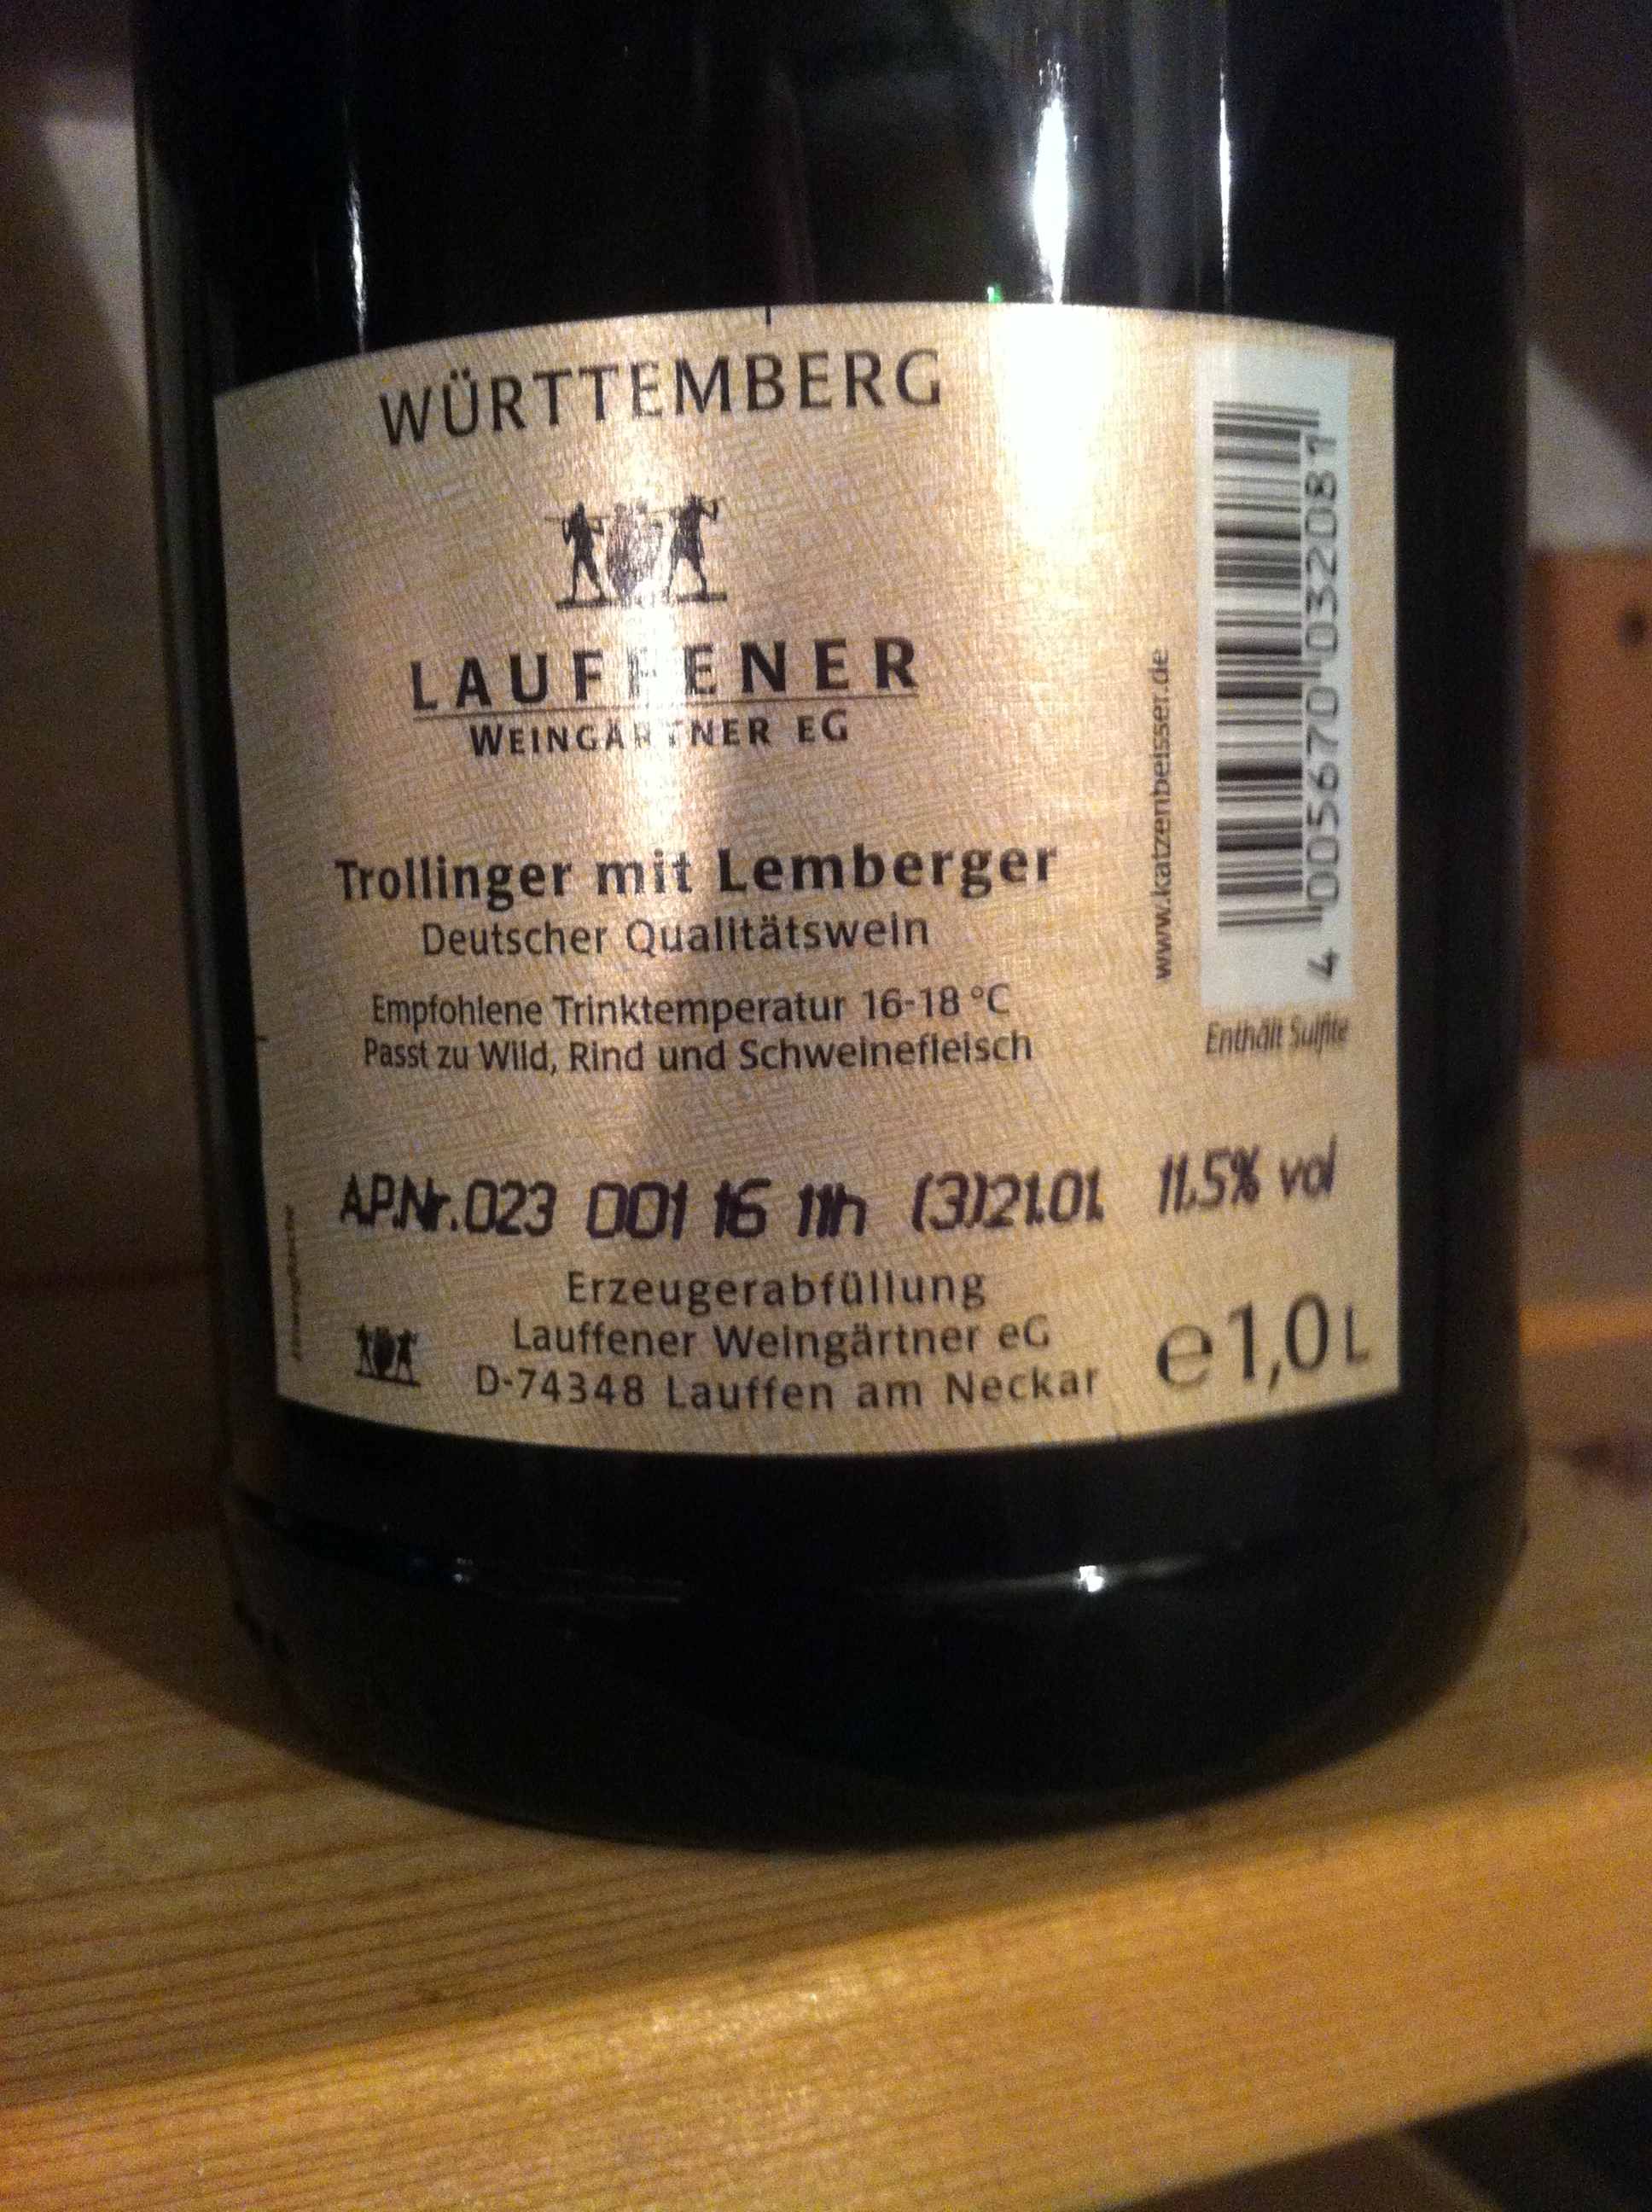 Trollinger mit Lemberger - Hersteller